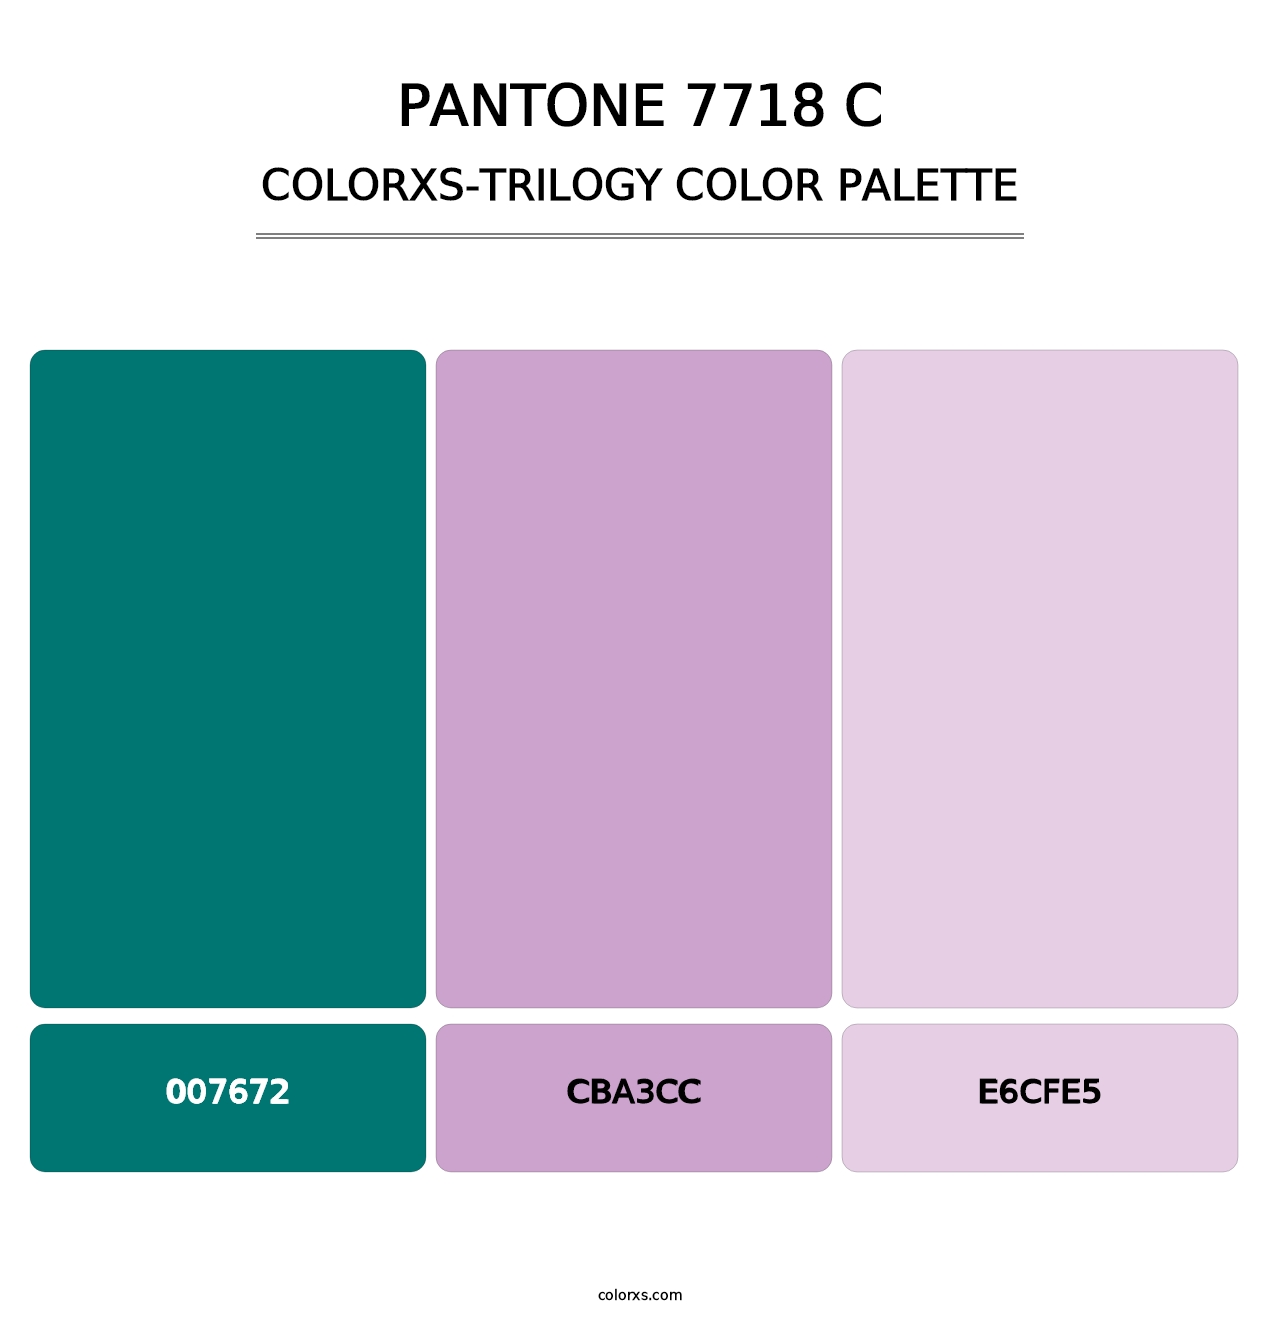 PANTONE 7718 C - Colorxs Trilogy Palette